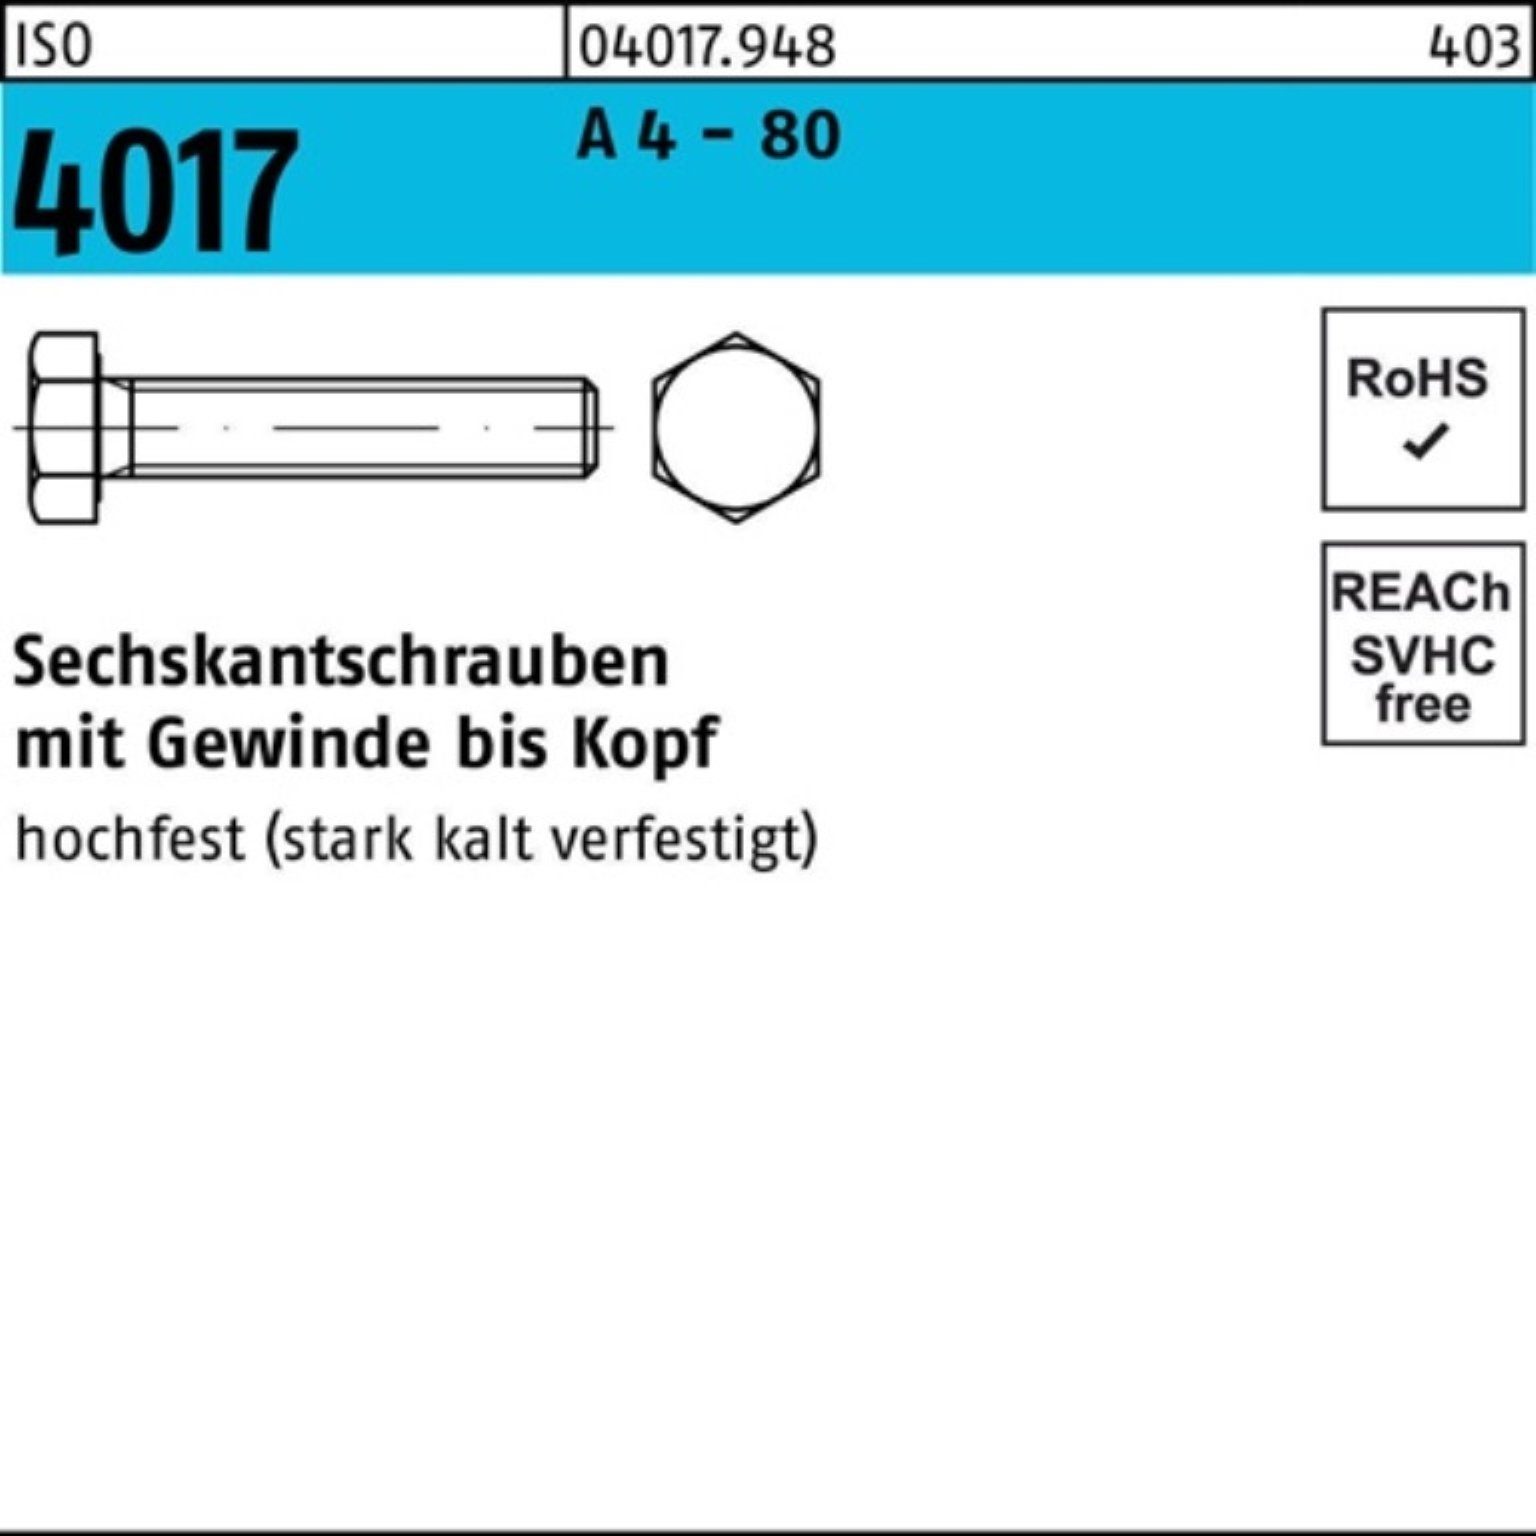 Bufab Sechskantschraube 100er Pack Sechskantschraube ISO 4017 VG M8x 10 A 4 - 80 100 Stück IS